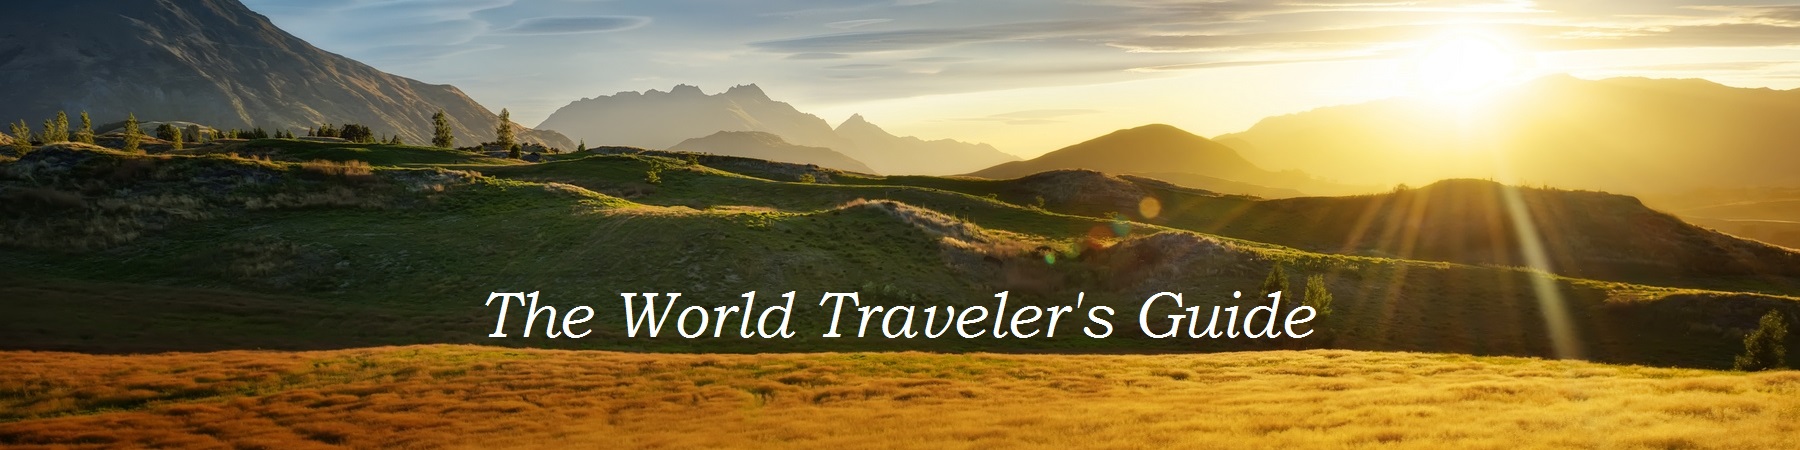 The World Traveler's Guide